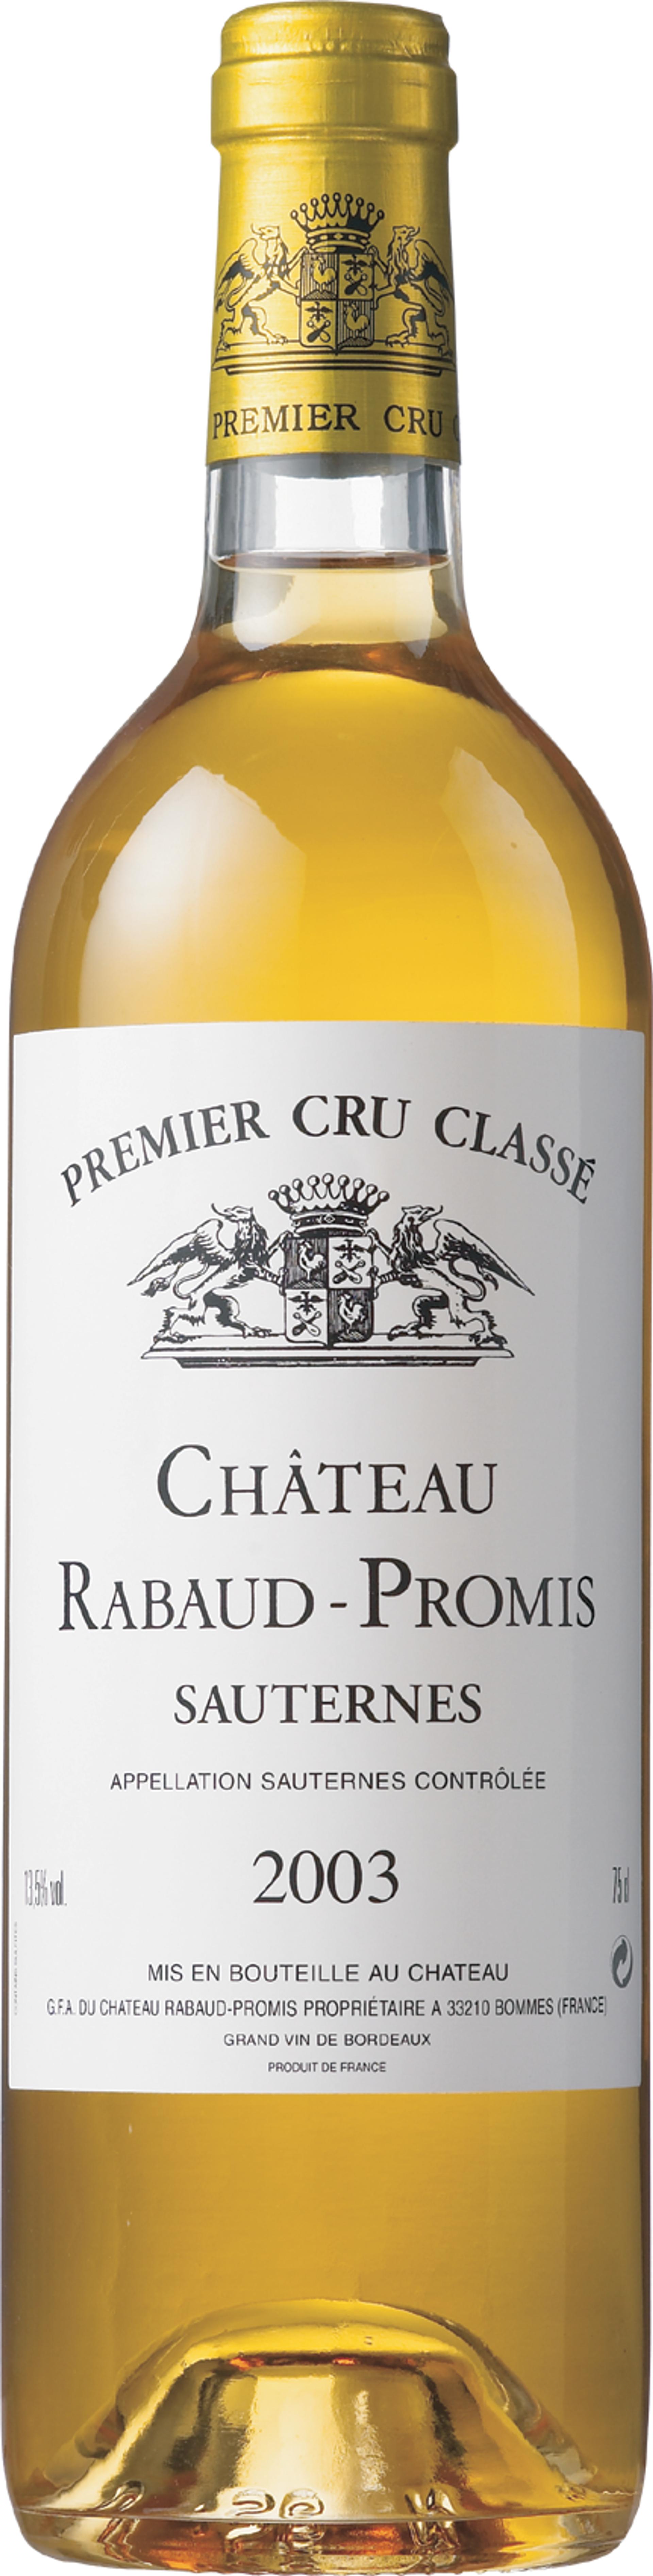 Château Rabaud-promis